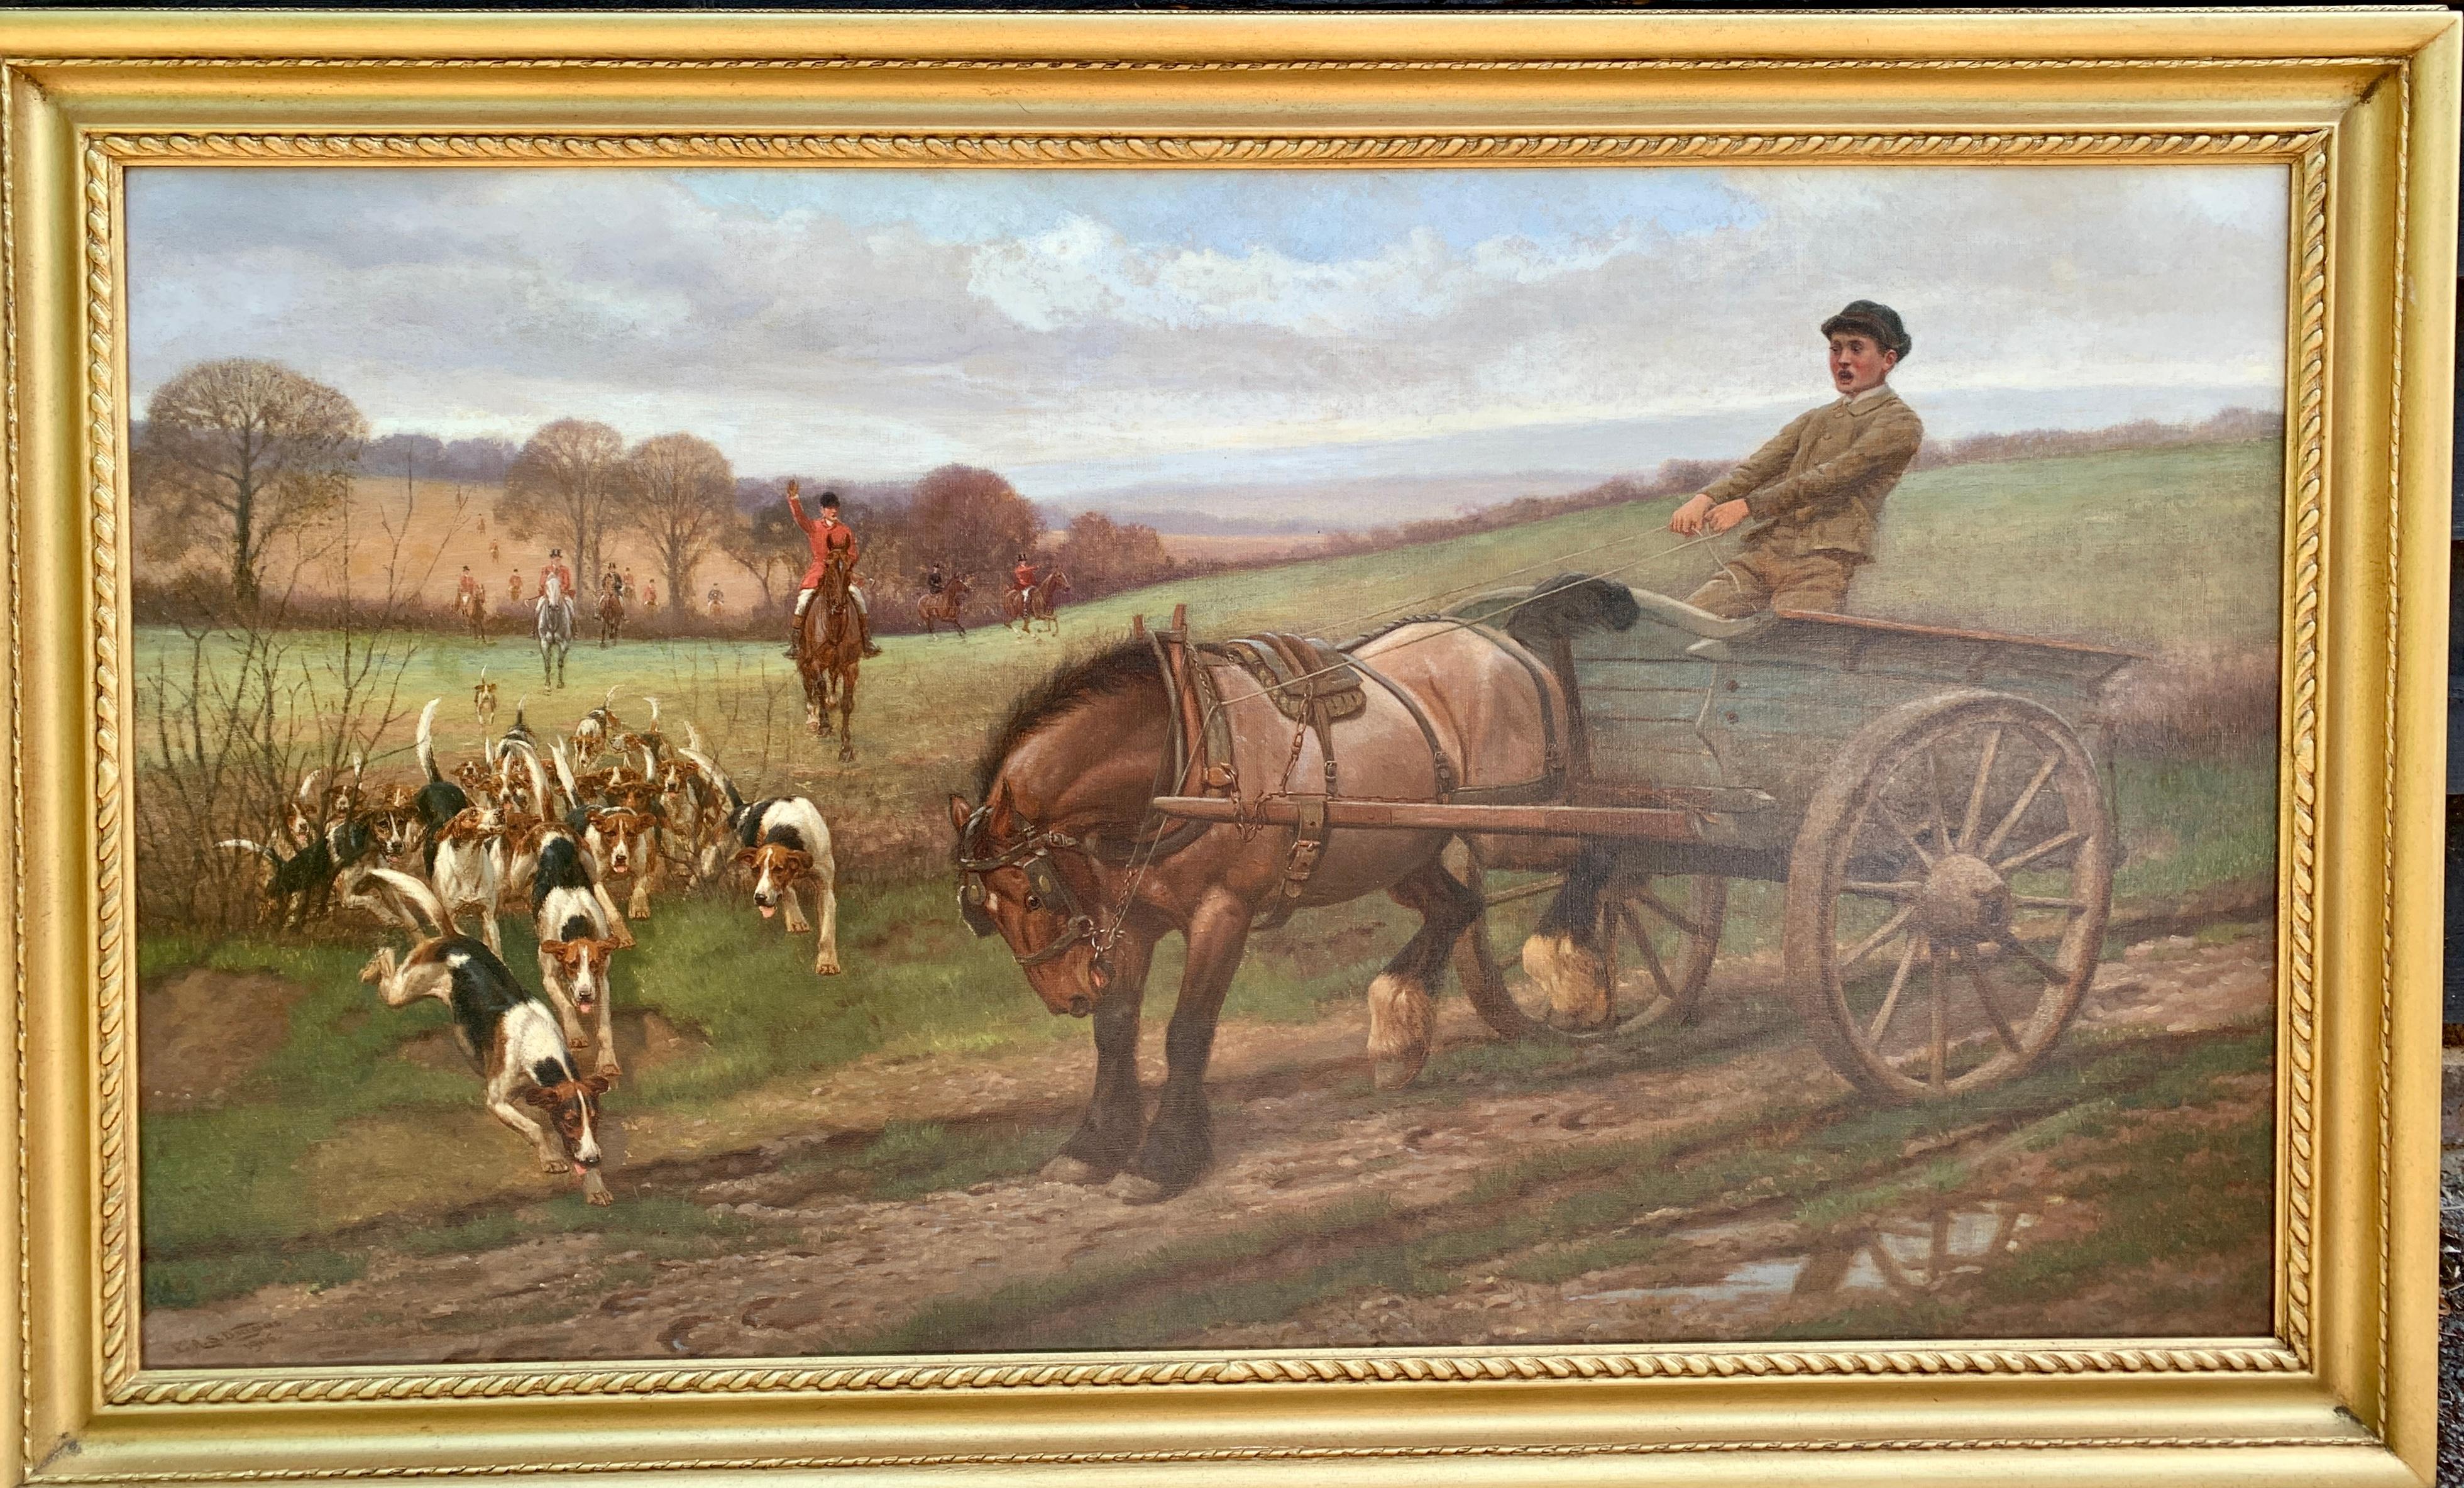 Début du 20e siècle, Angleterre, chiens de chasse et chariot dans le paysage